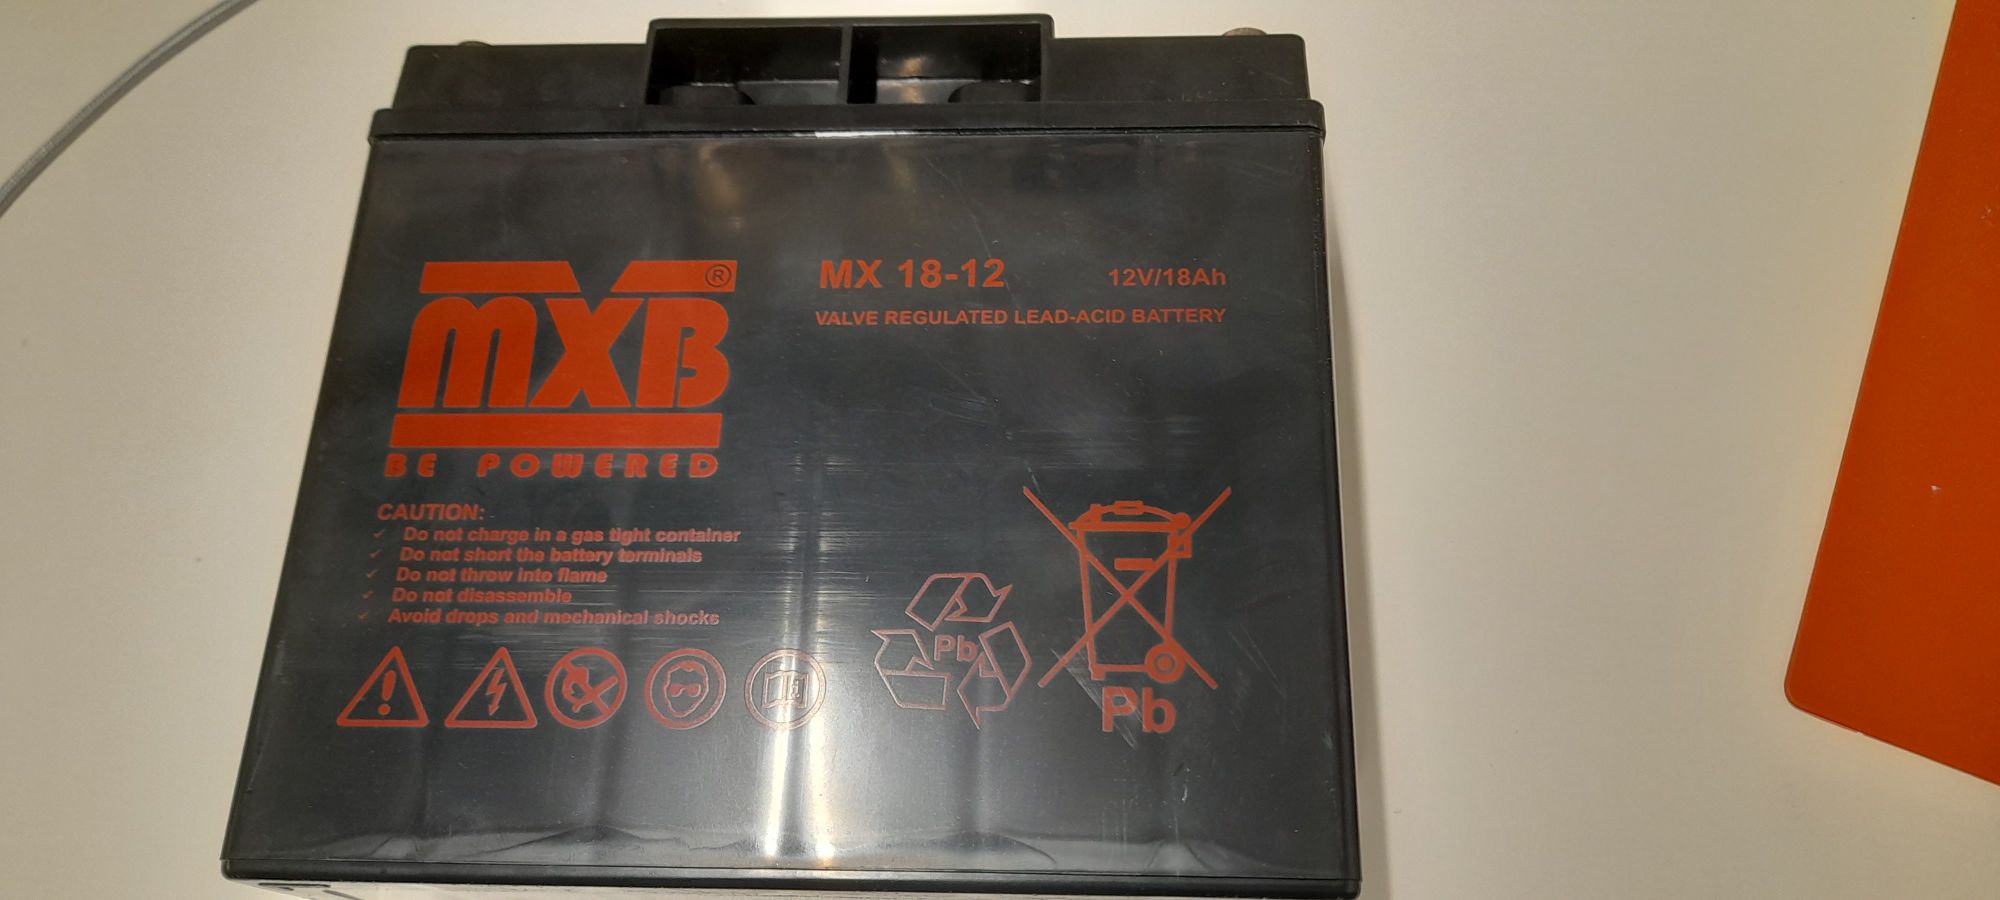 Używany akumulator kwasowo-ołowiowy MX 18-12